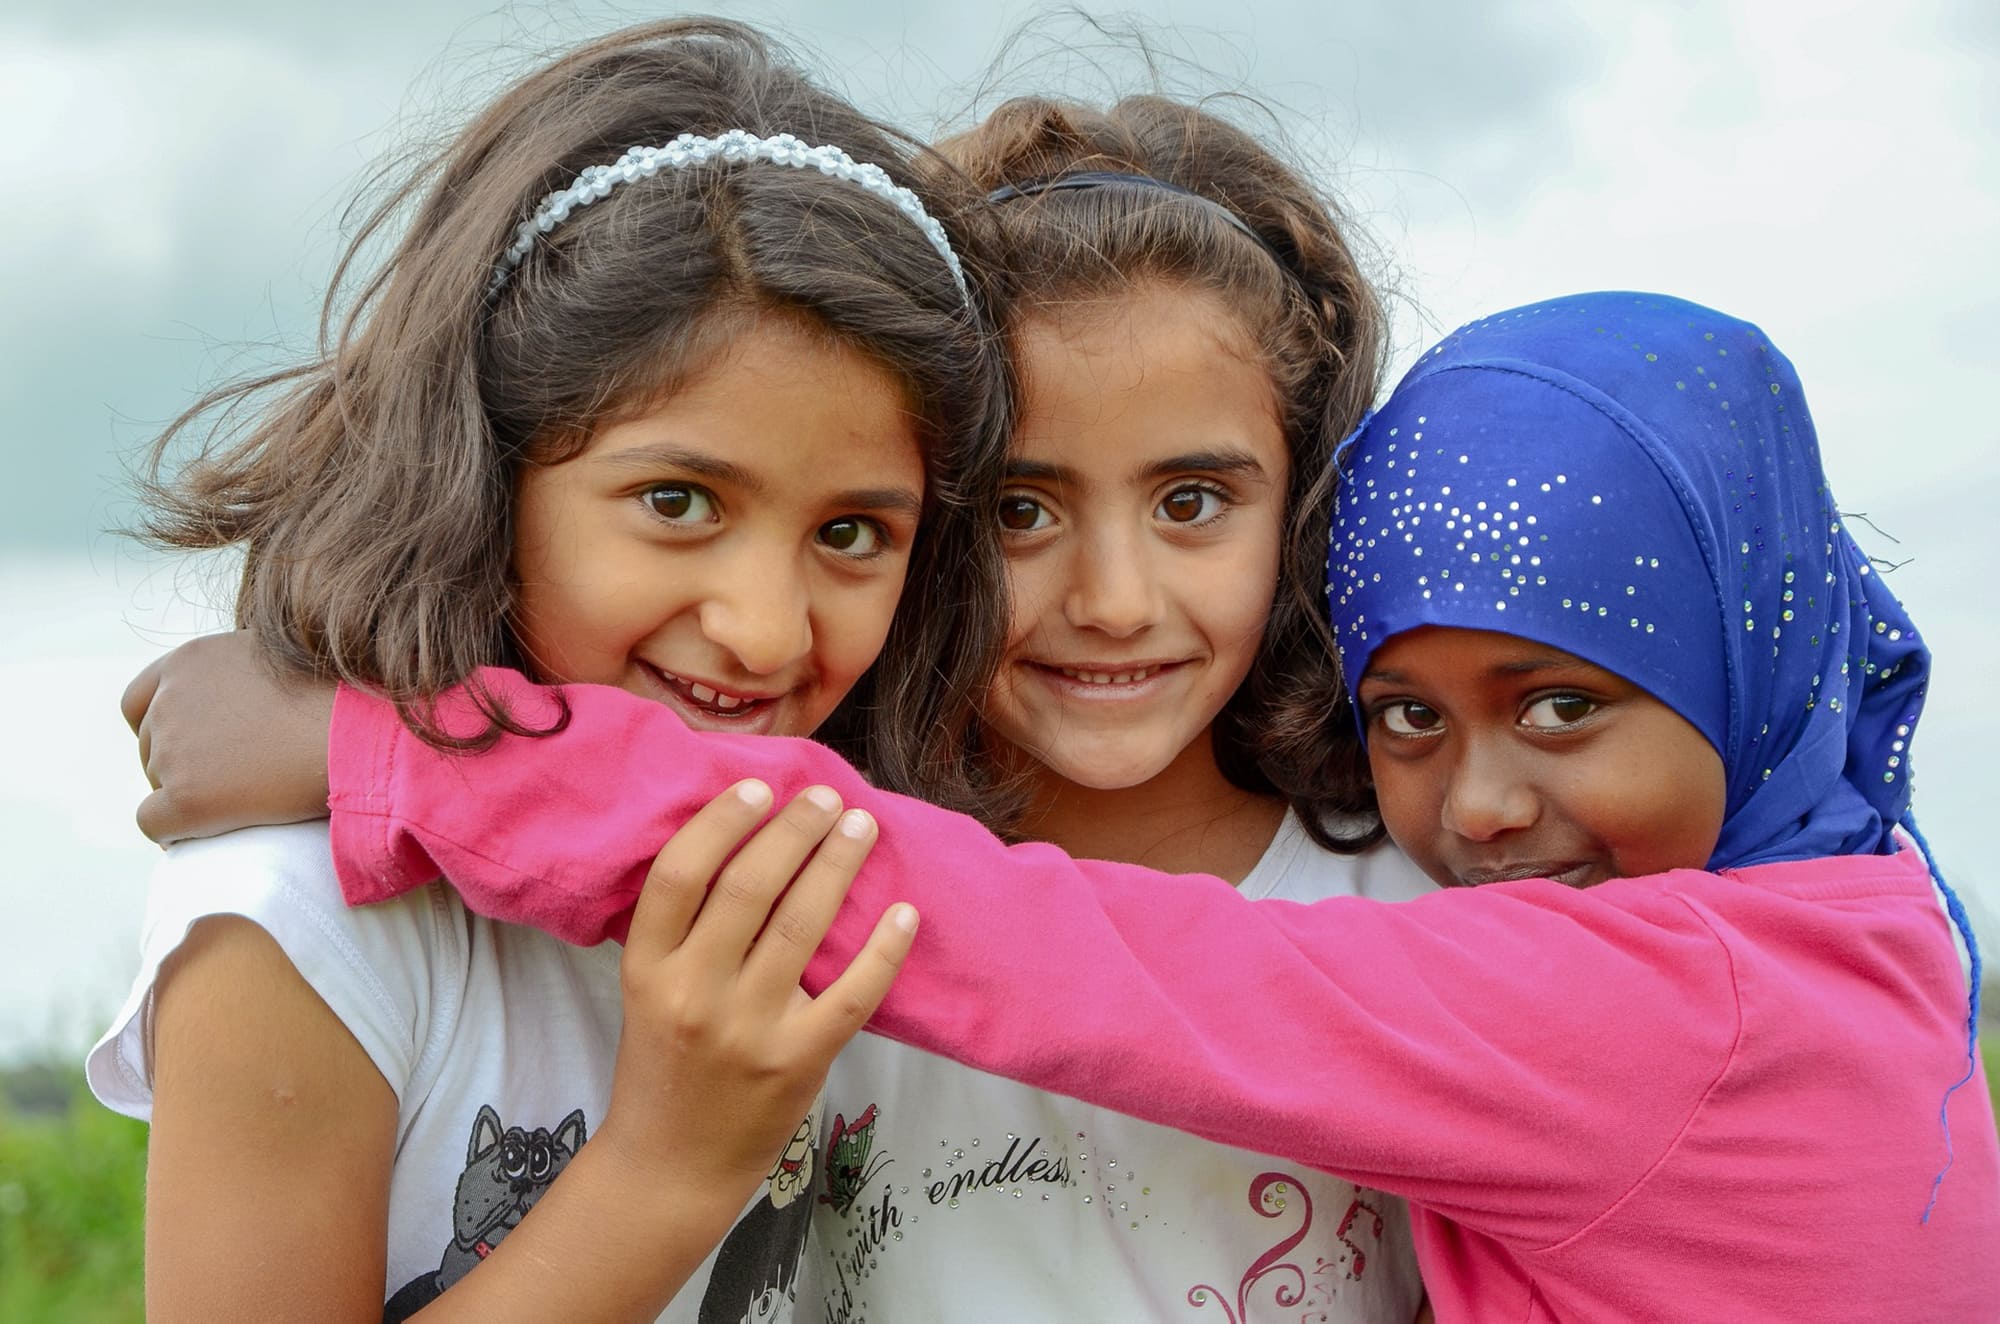 3 junge Mädchen mit verschiedenem Migrationshintergrund und Kopftuch umarmen sich lachend